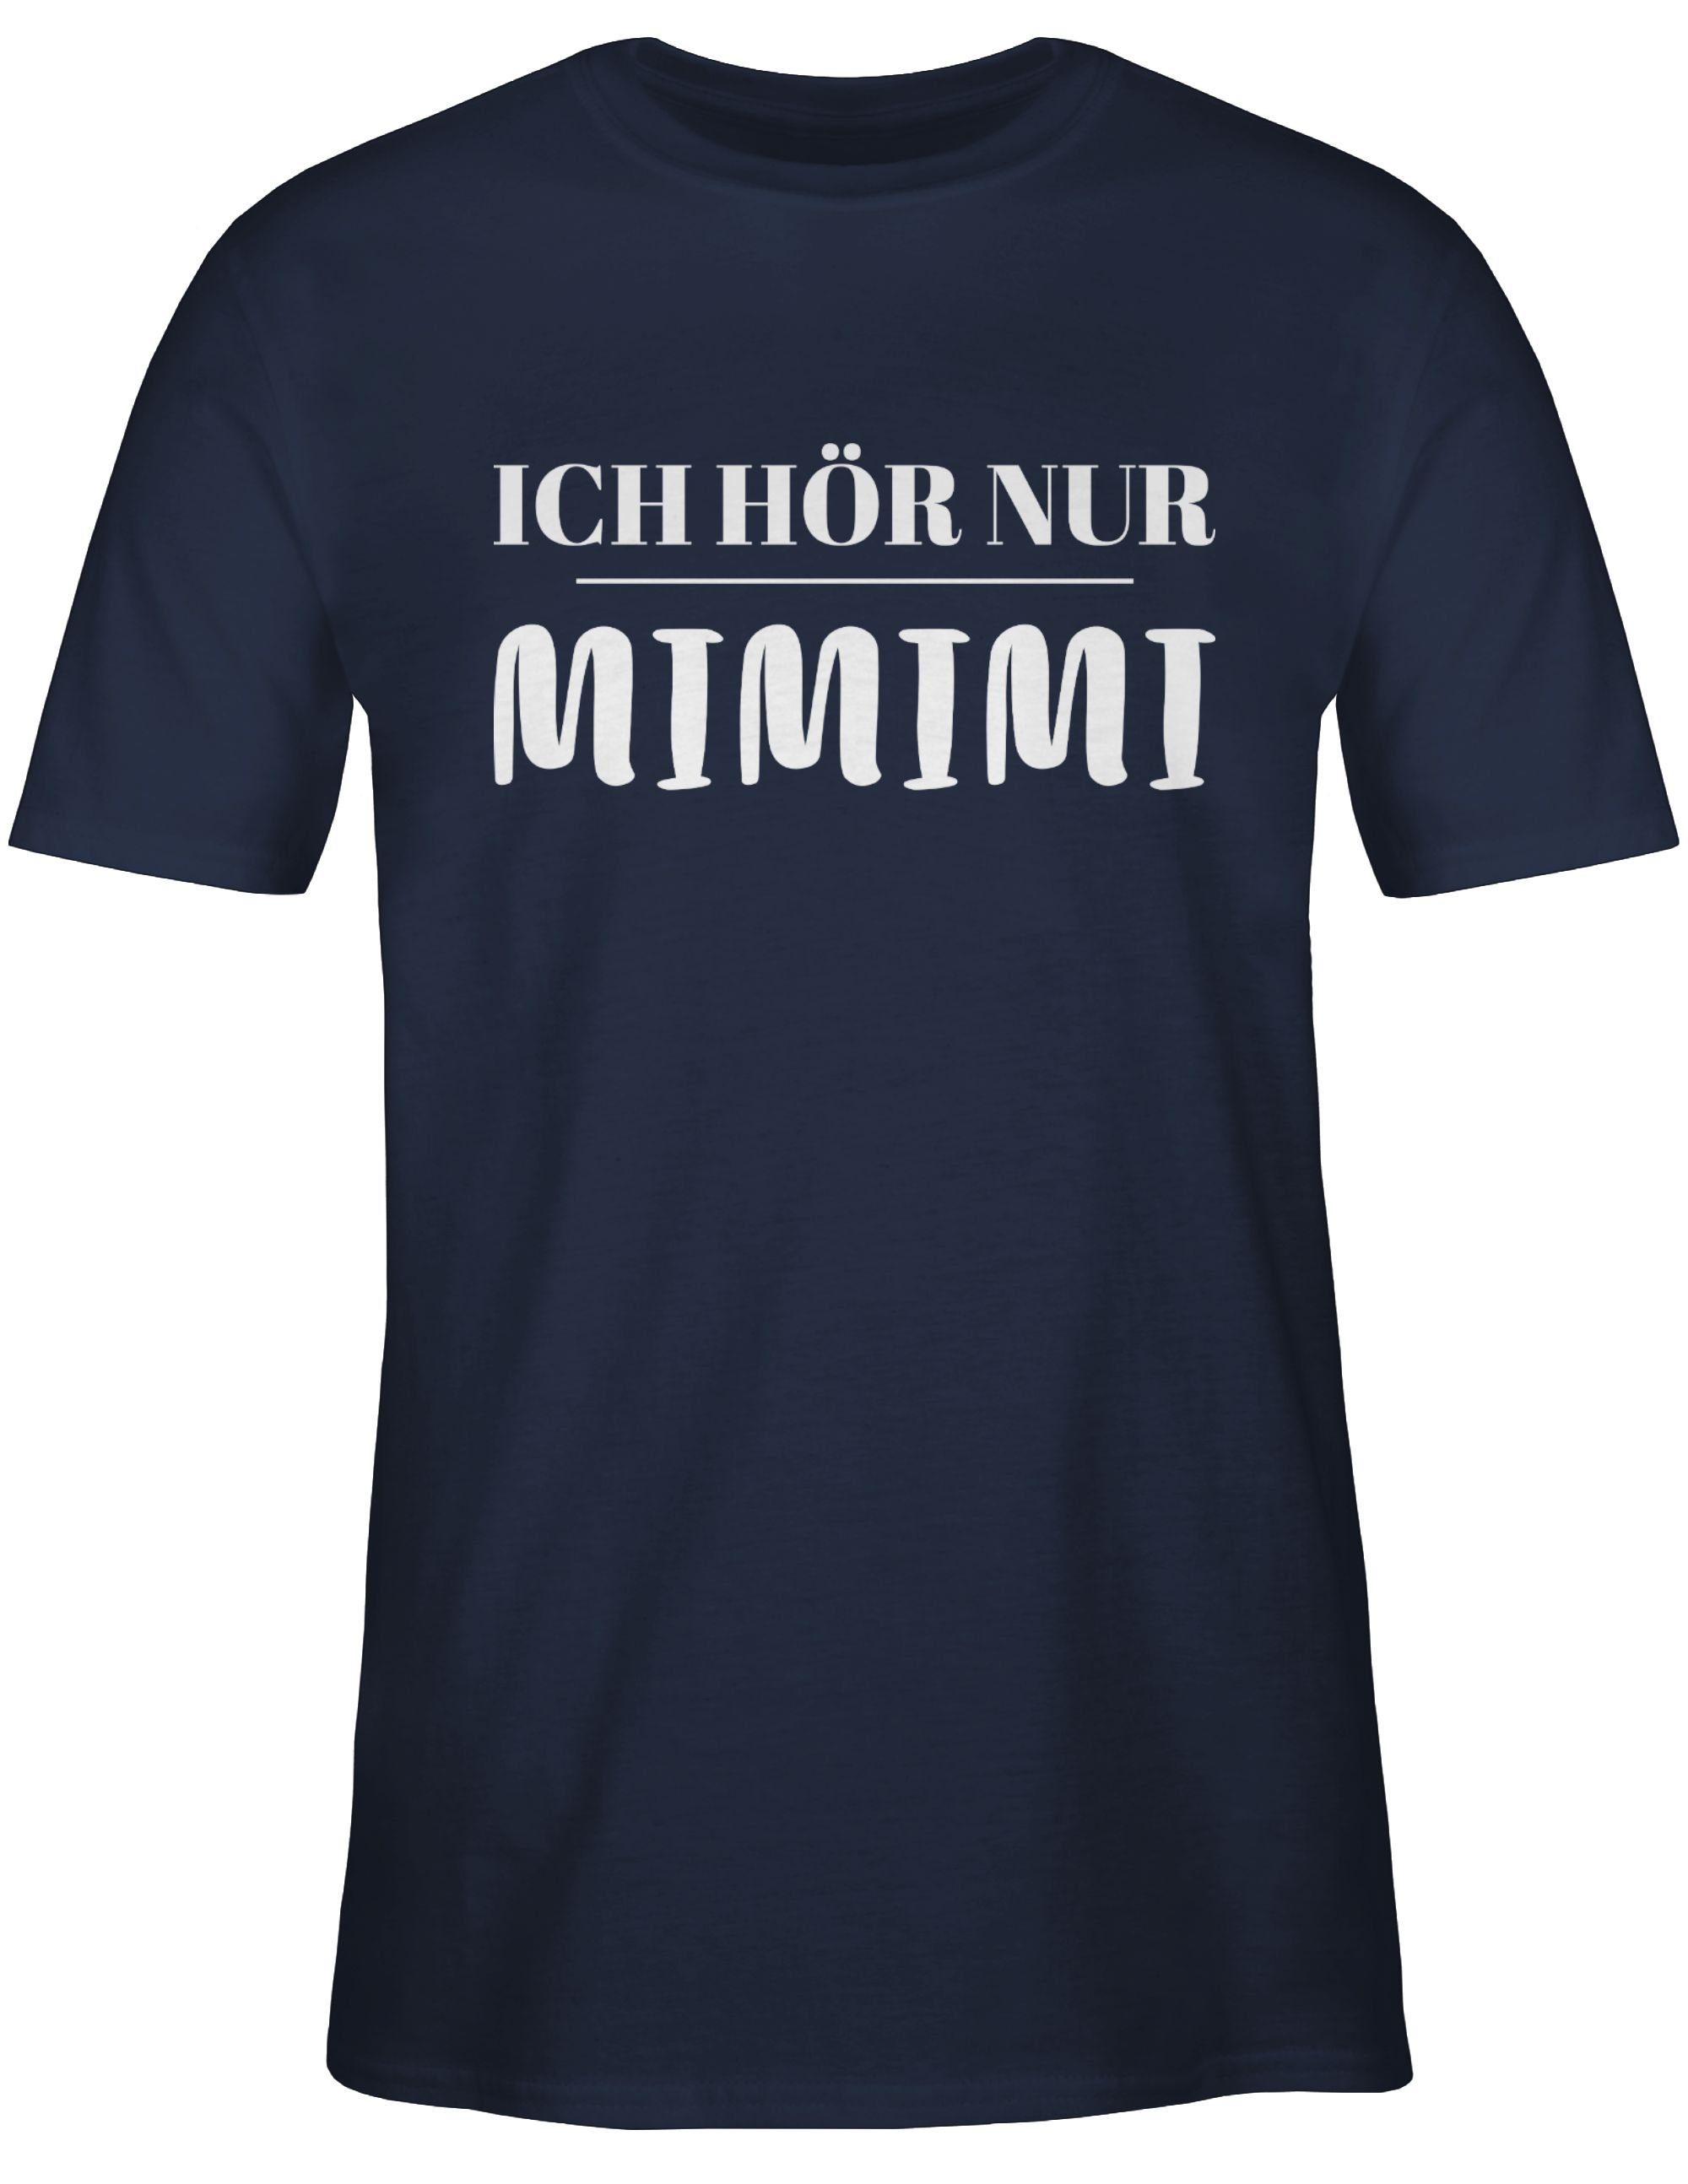 Shirtracer T-Shirt mimimi Navy Statement mit 2 höre Ich Sprüche Spruch nur Blau